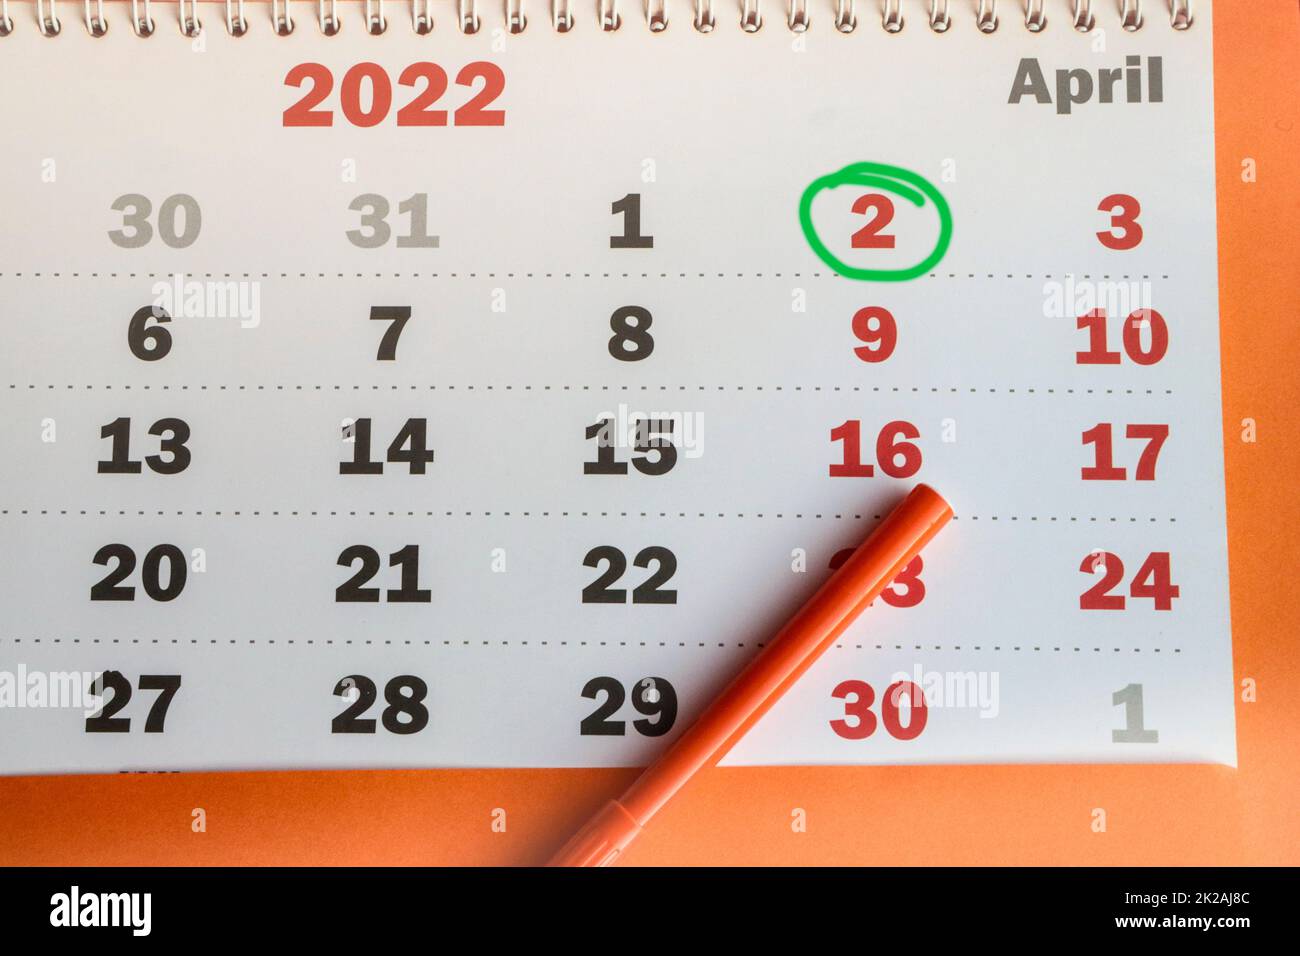 International Children's Book Day, an der Wand montierter Kalender aus Papier mit einem hervorgehobenen Datum vom 02. April 2022 und einem orangefarbenen Marker, Draufsicht Stockfoto